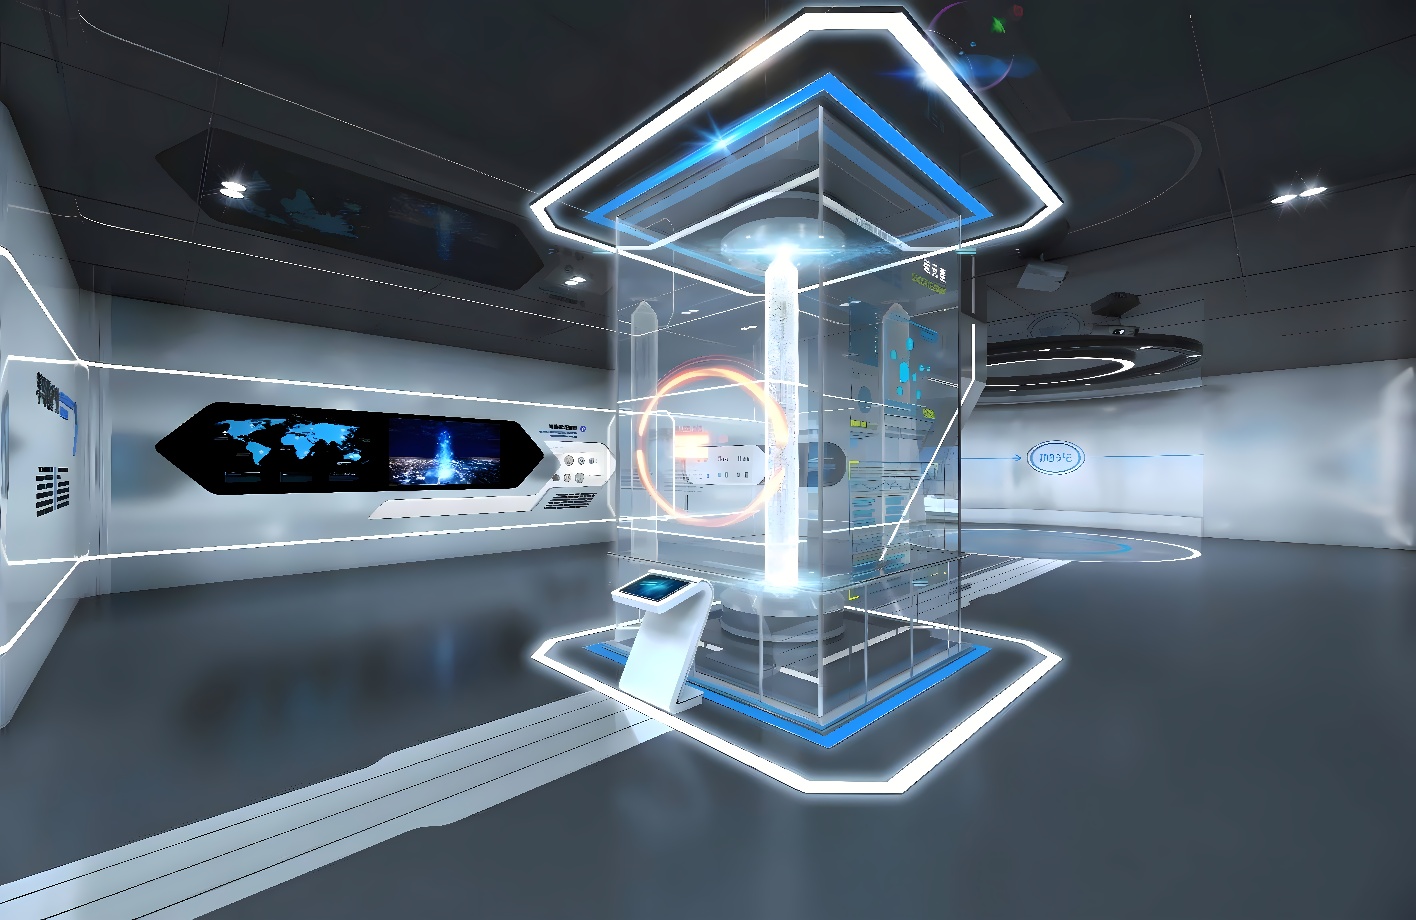 这是一张展示现代科技感室内设计的图片，内有未来风格的透明屏幕和多媒体展示，整体色调以白色和蓝色为主。